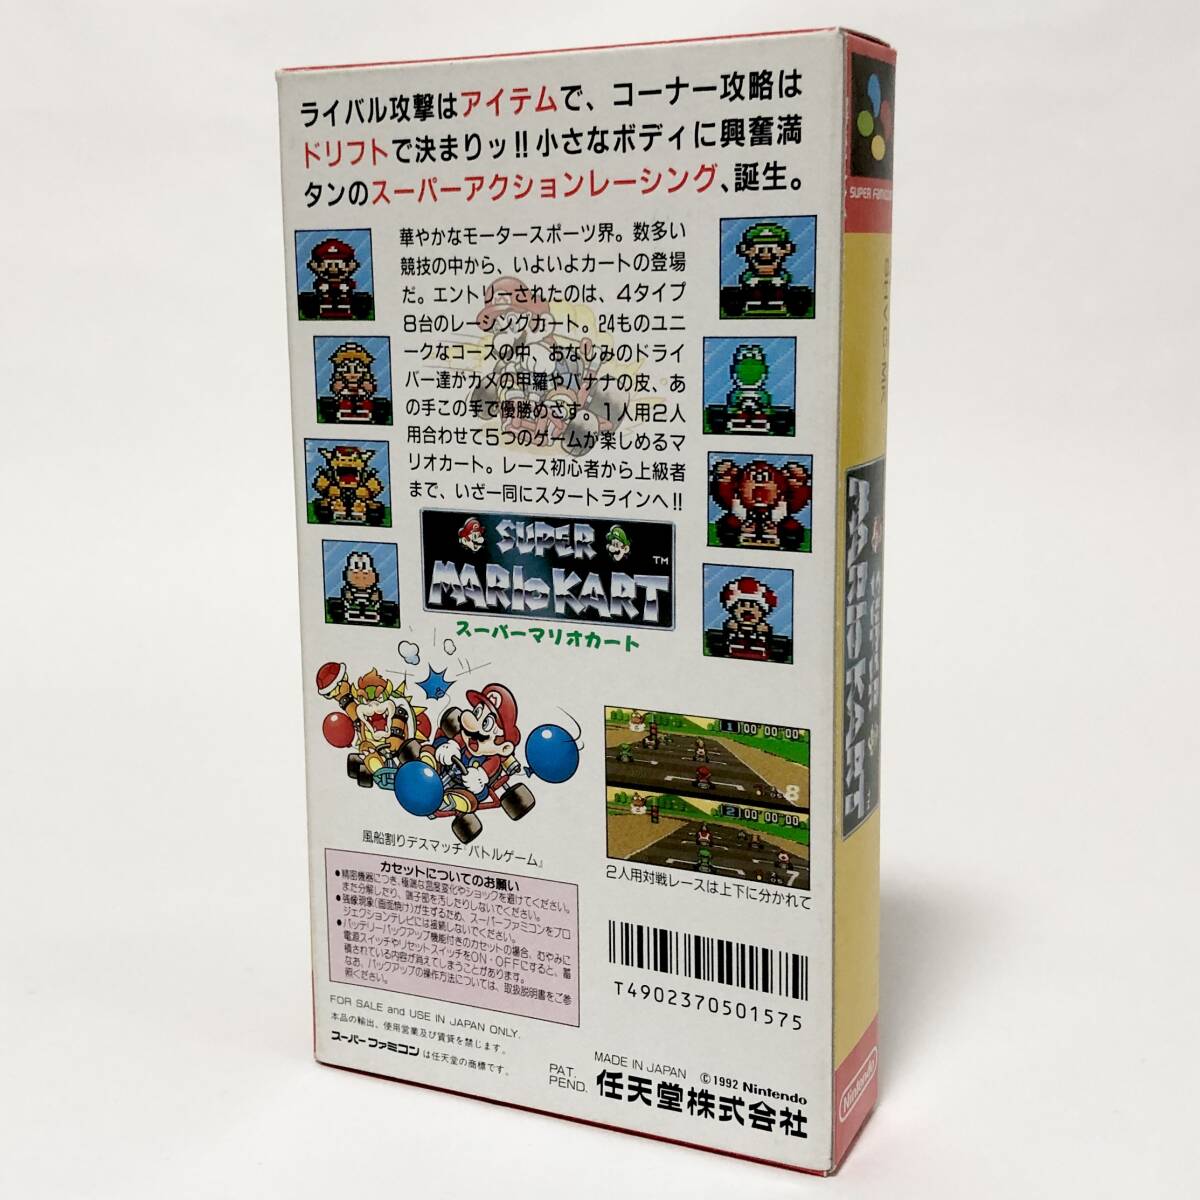 スーパーファミコン スーパーマリオカート 箱説付き 操作カード付き 痛みあり 任天堂 Nintendo Super Famicom Super Mario Kart CIB Tested_画像3